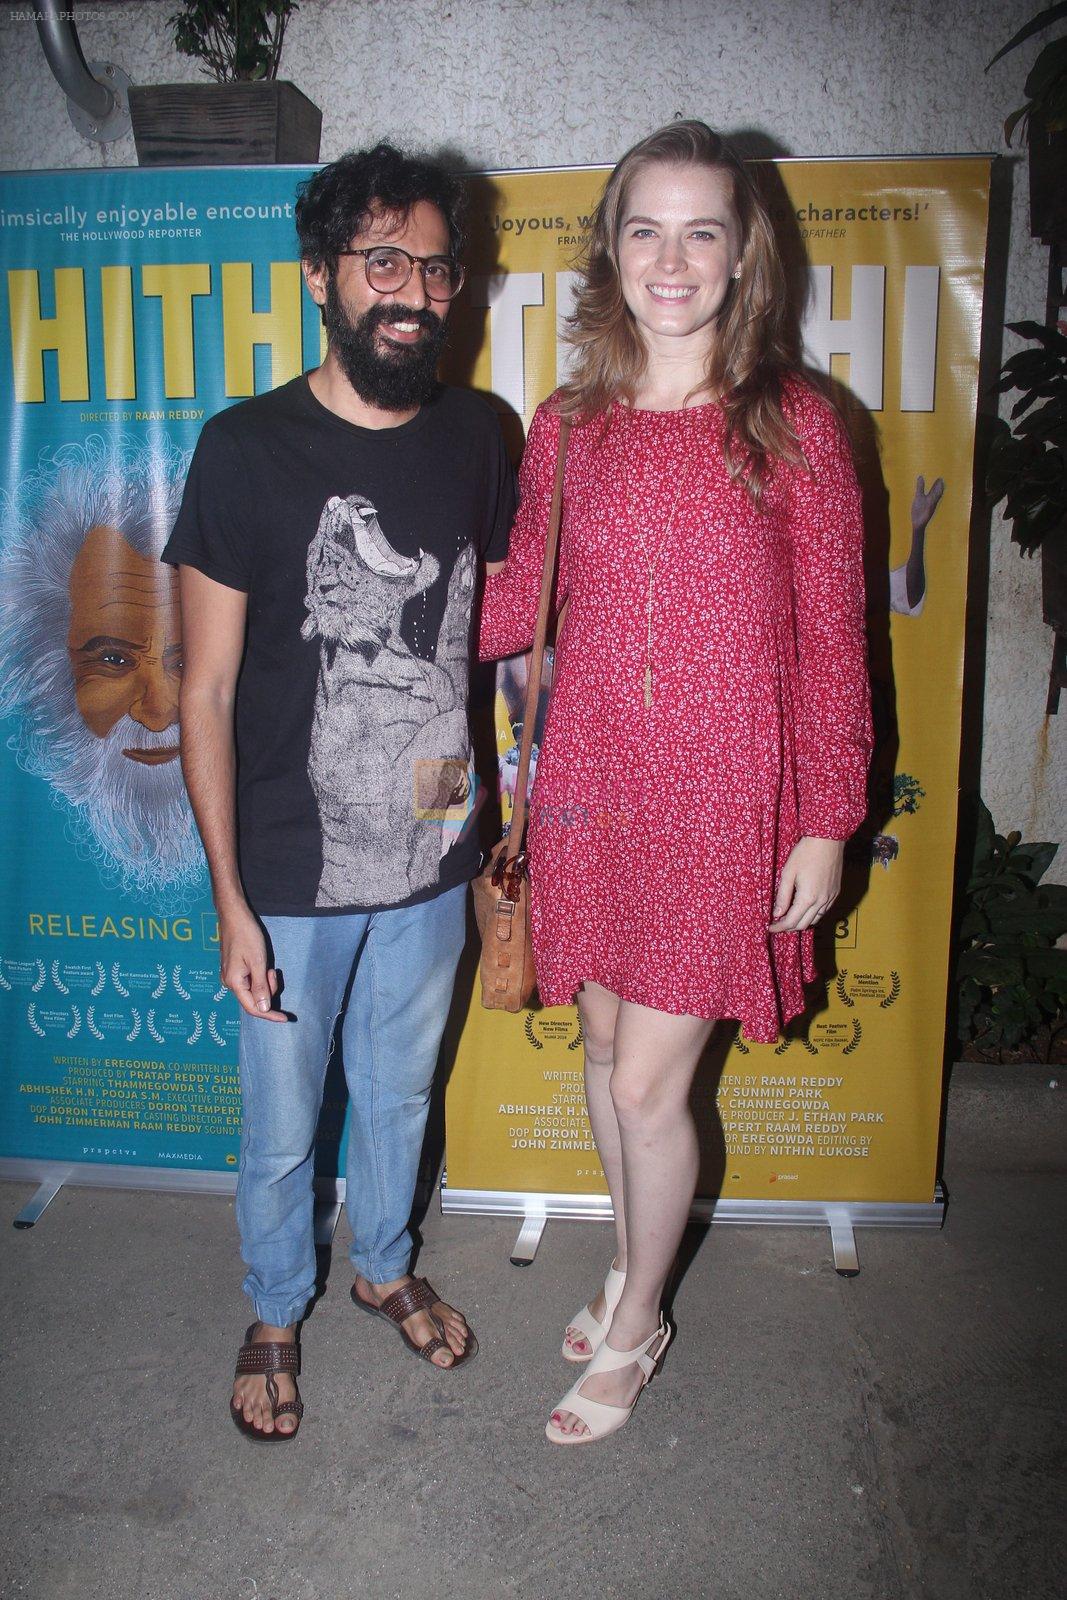 at Thithi screening in Mumbai on 30th May 2016